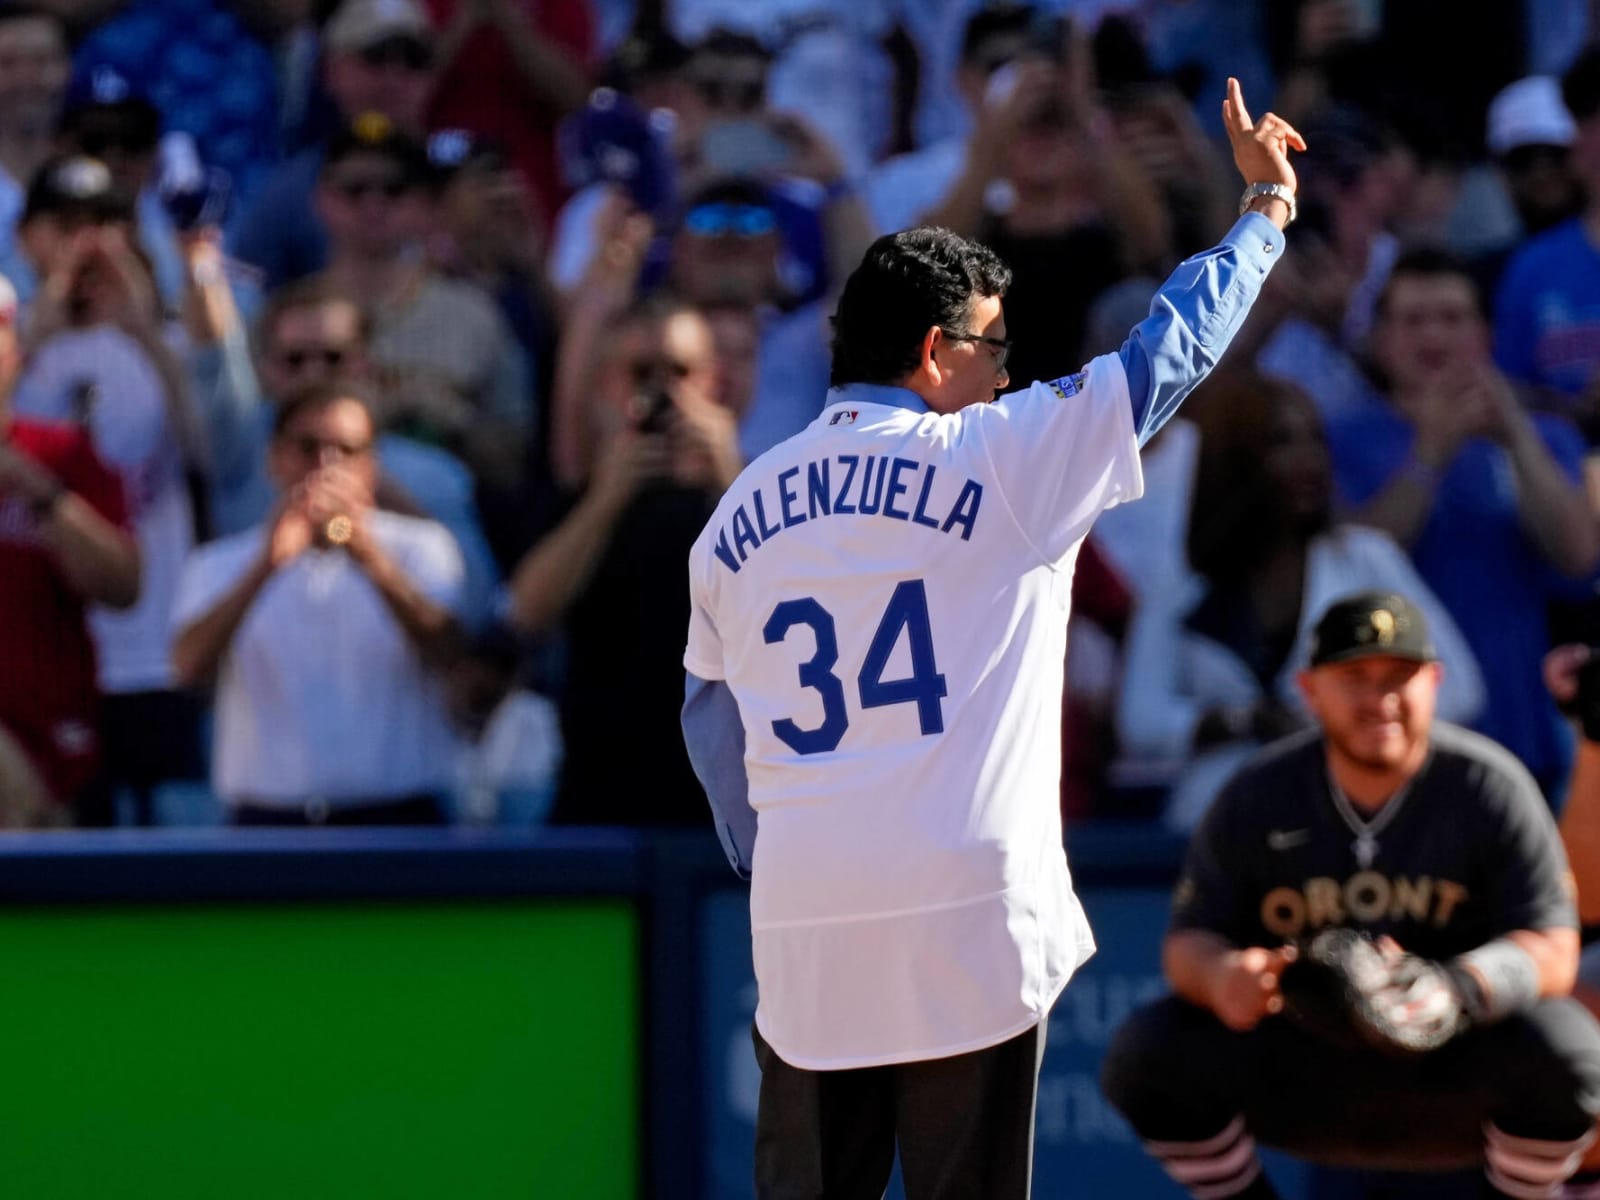 Fernando Valenzuela's No. 34 Dodgers' retirement announcement led